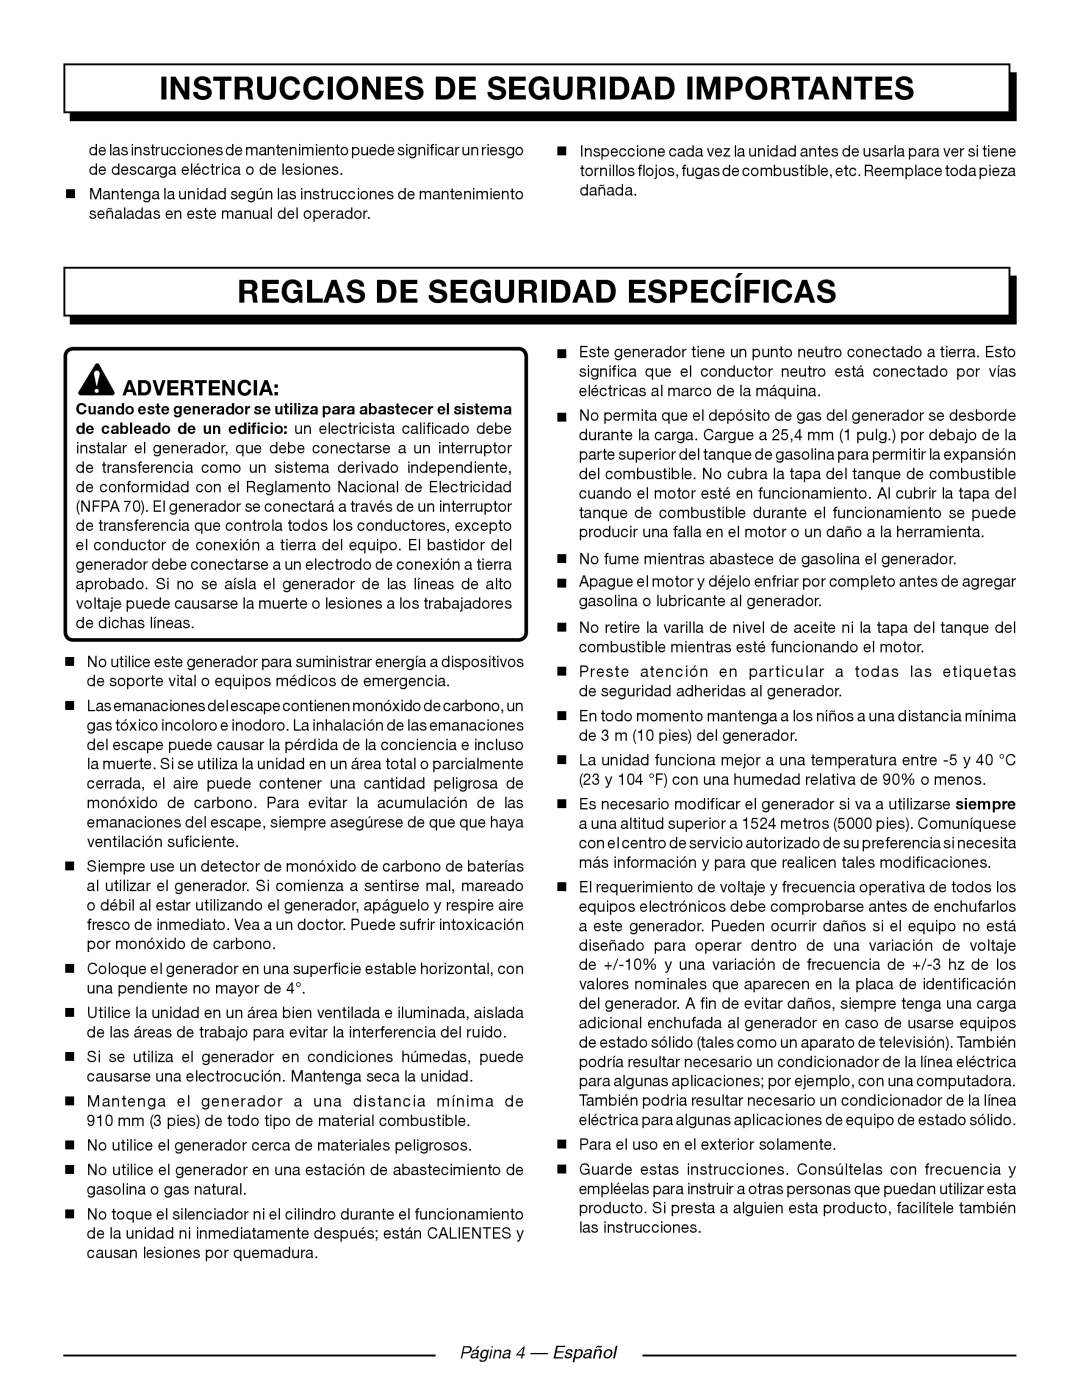 Homelite UT905011 Reglas De Seguridad Específicas, Página 4 — Español, Instrucciones De Seguridad Importantes, Advertencia 